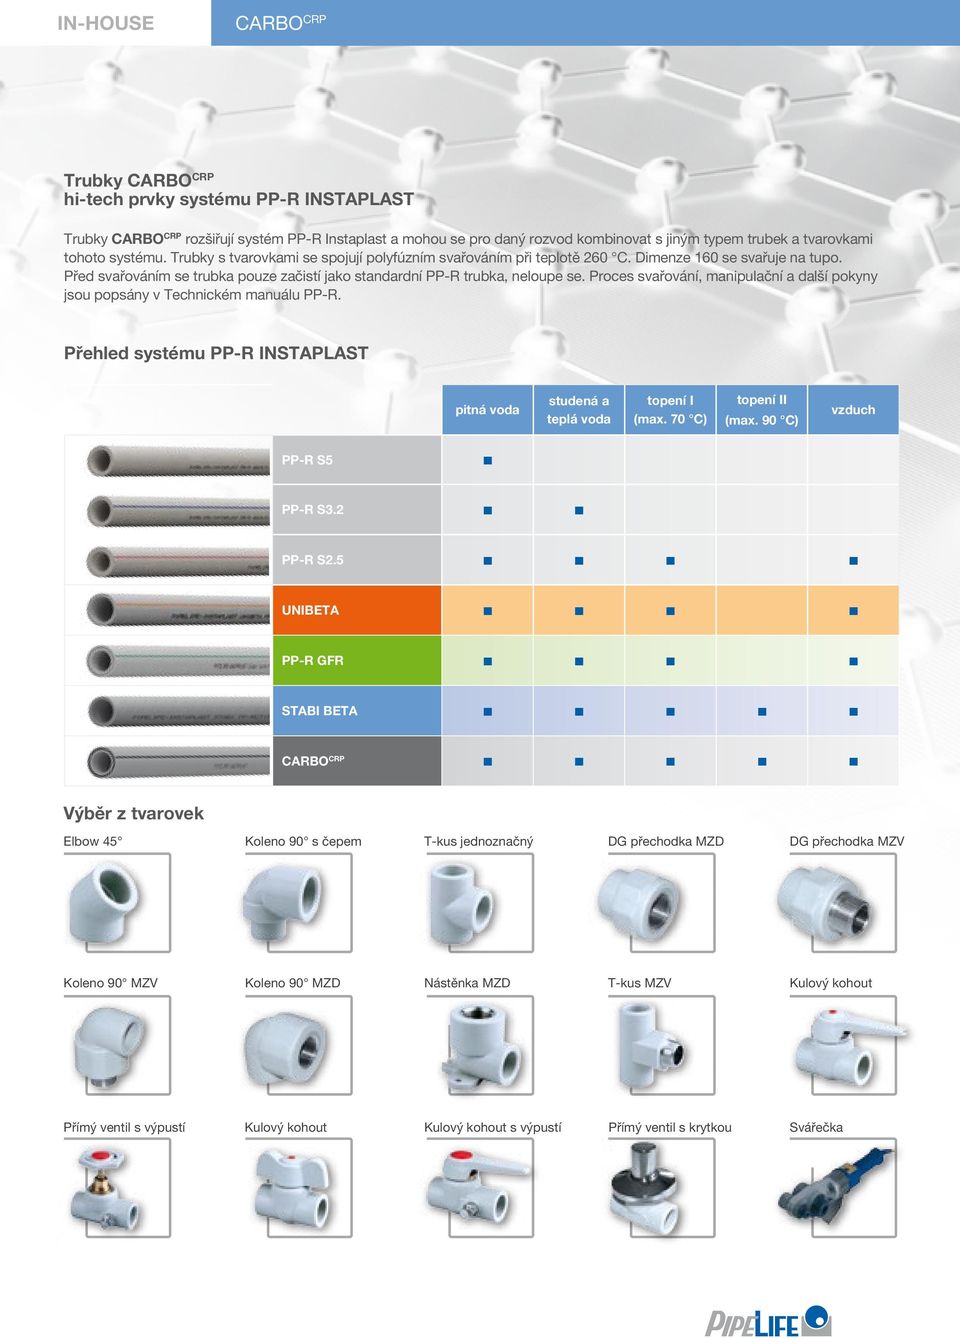 Proces svařování, manipulační a další pokyny jsou popsány v Technickém manuálu PP-R. Přehled systému PP-R INSTAPLAST pitná voda studená a teplá voda topení I (max. 70 C) topení II (max.